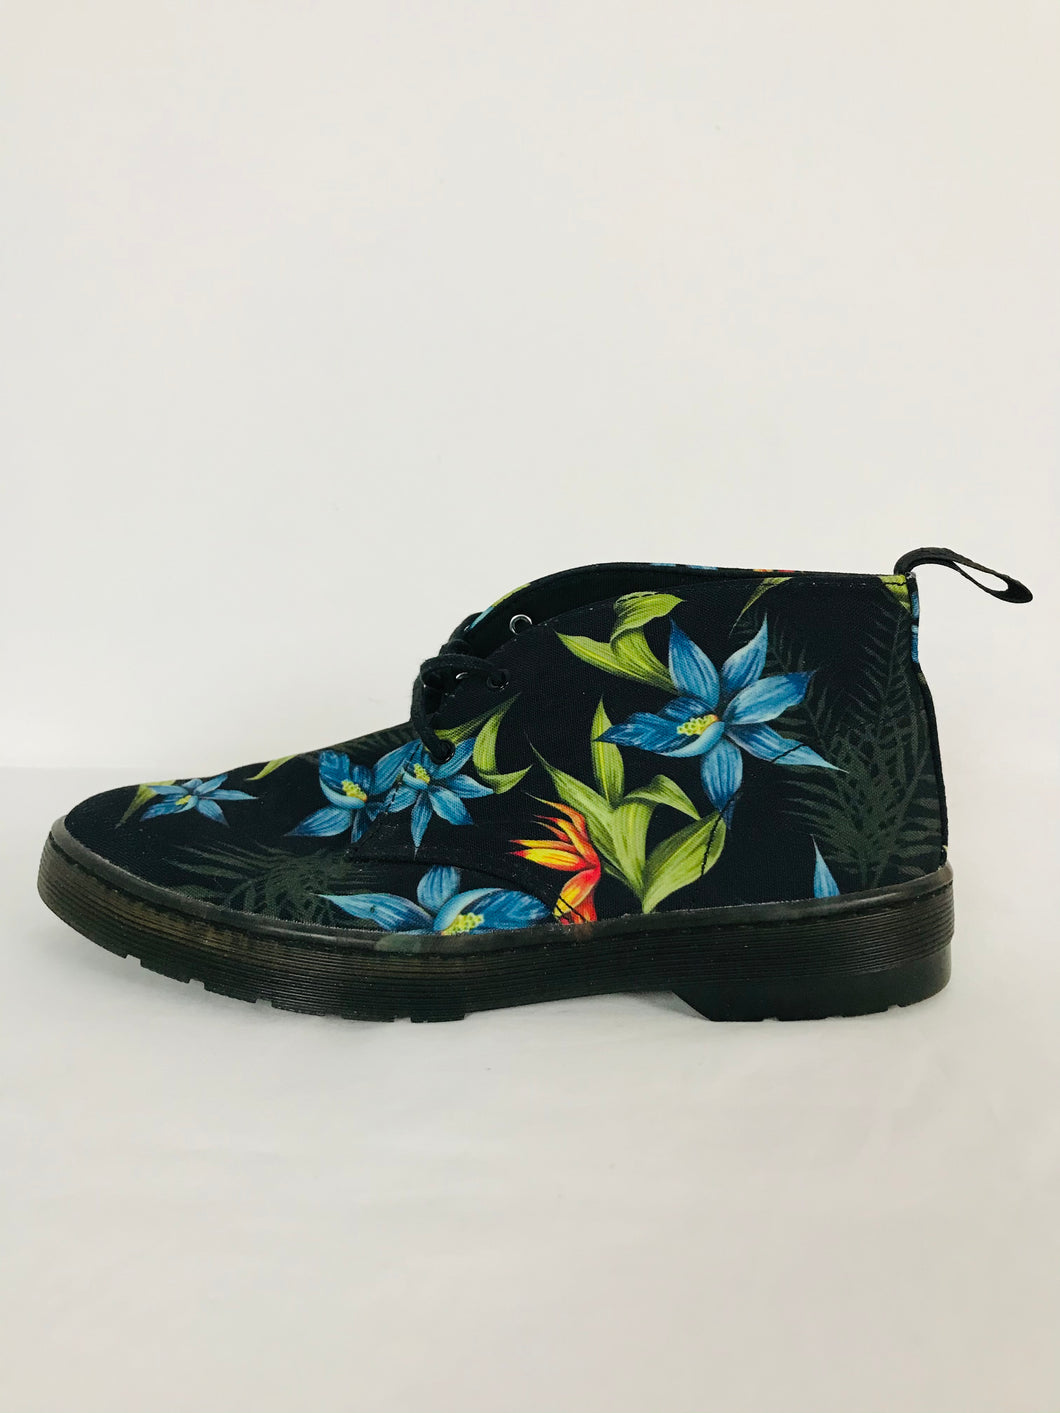 Dr Martens Women’s Floral Print Ankle Boots | UK 6 EU 39 | Black